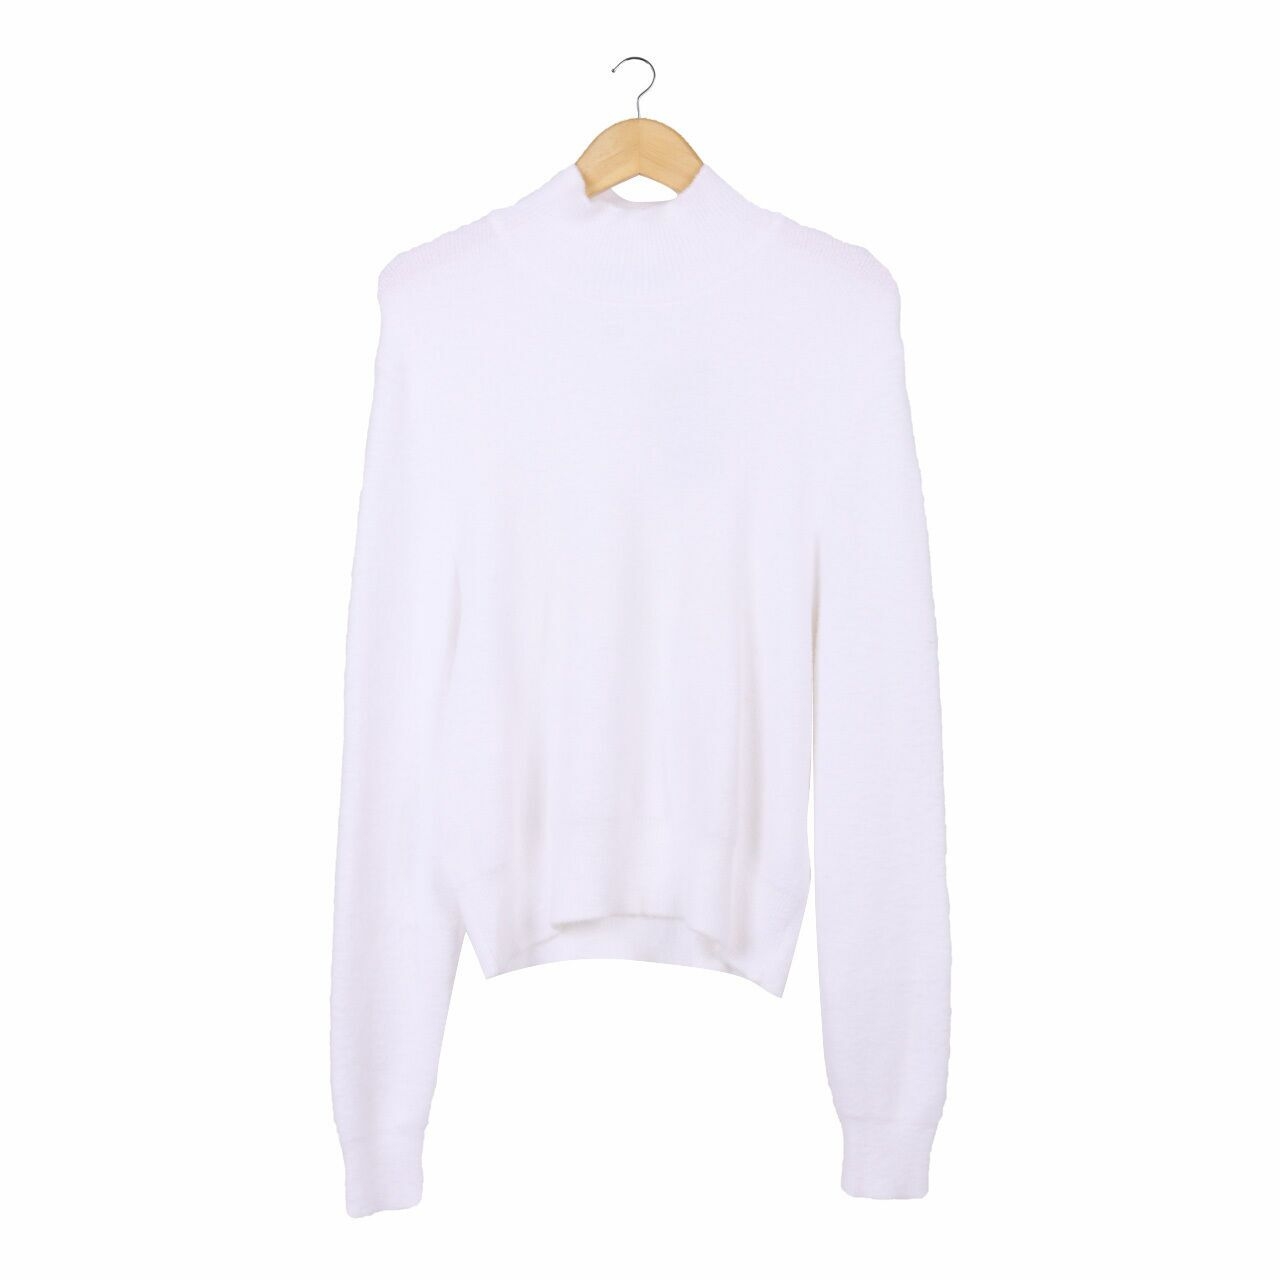 Zara White Sweatshirt